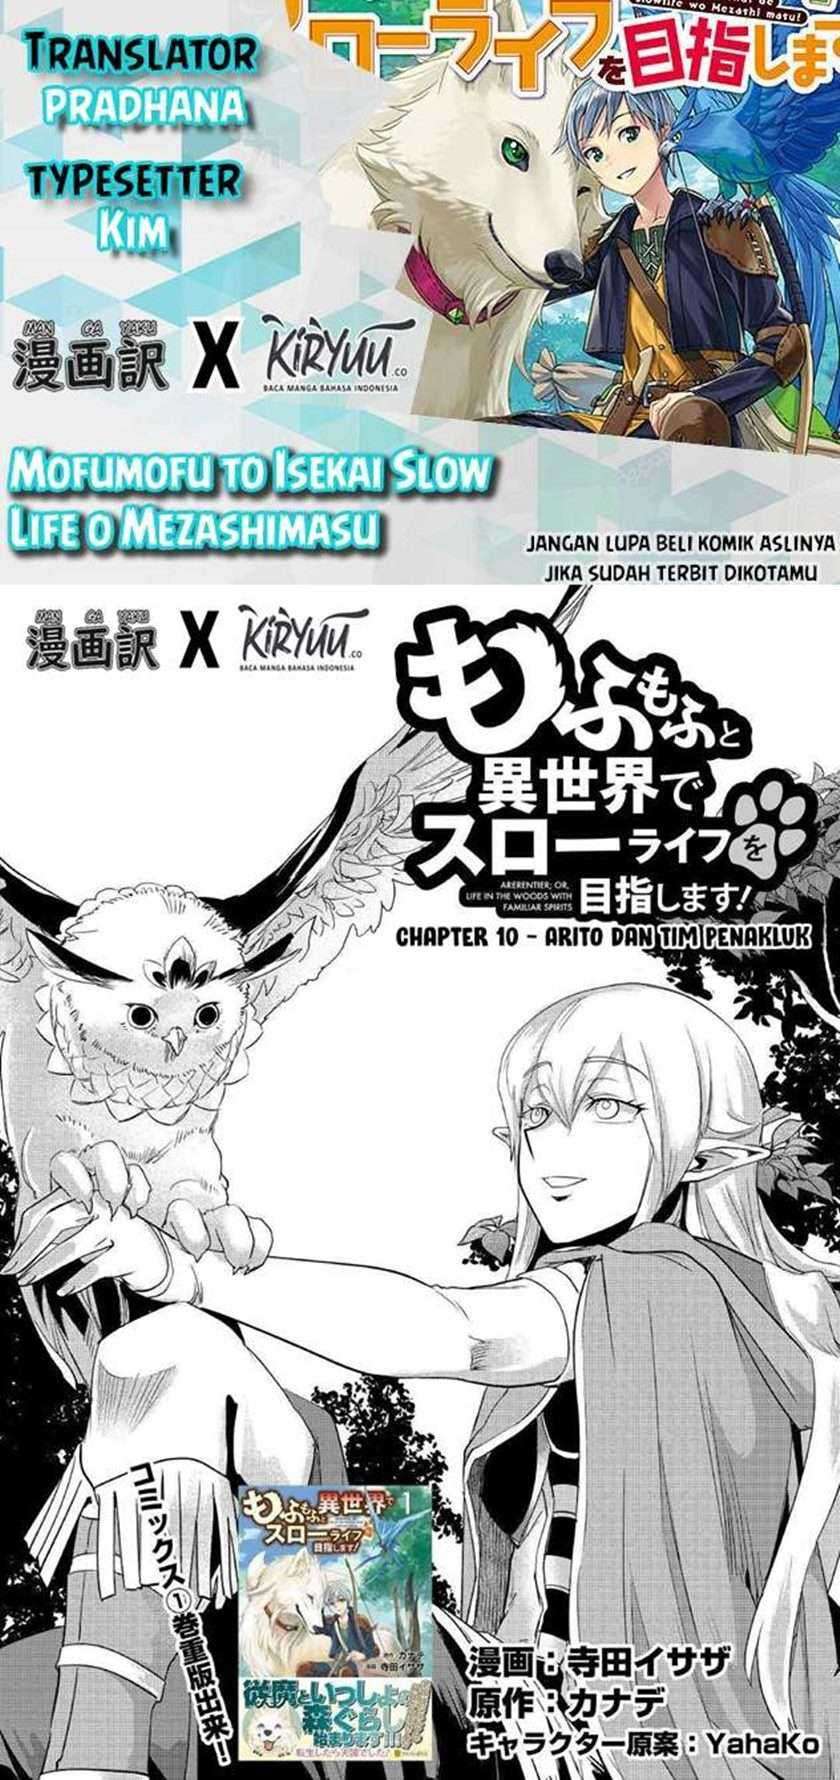 Mofumofu to Isekai Slow Life o Mezashimasu! Chapter 10